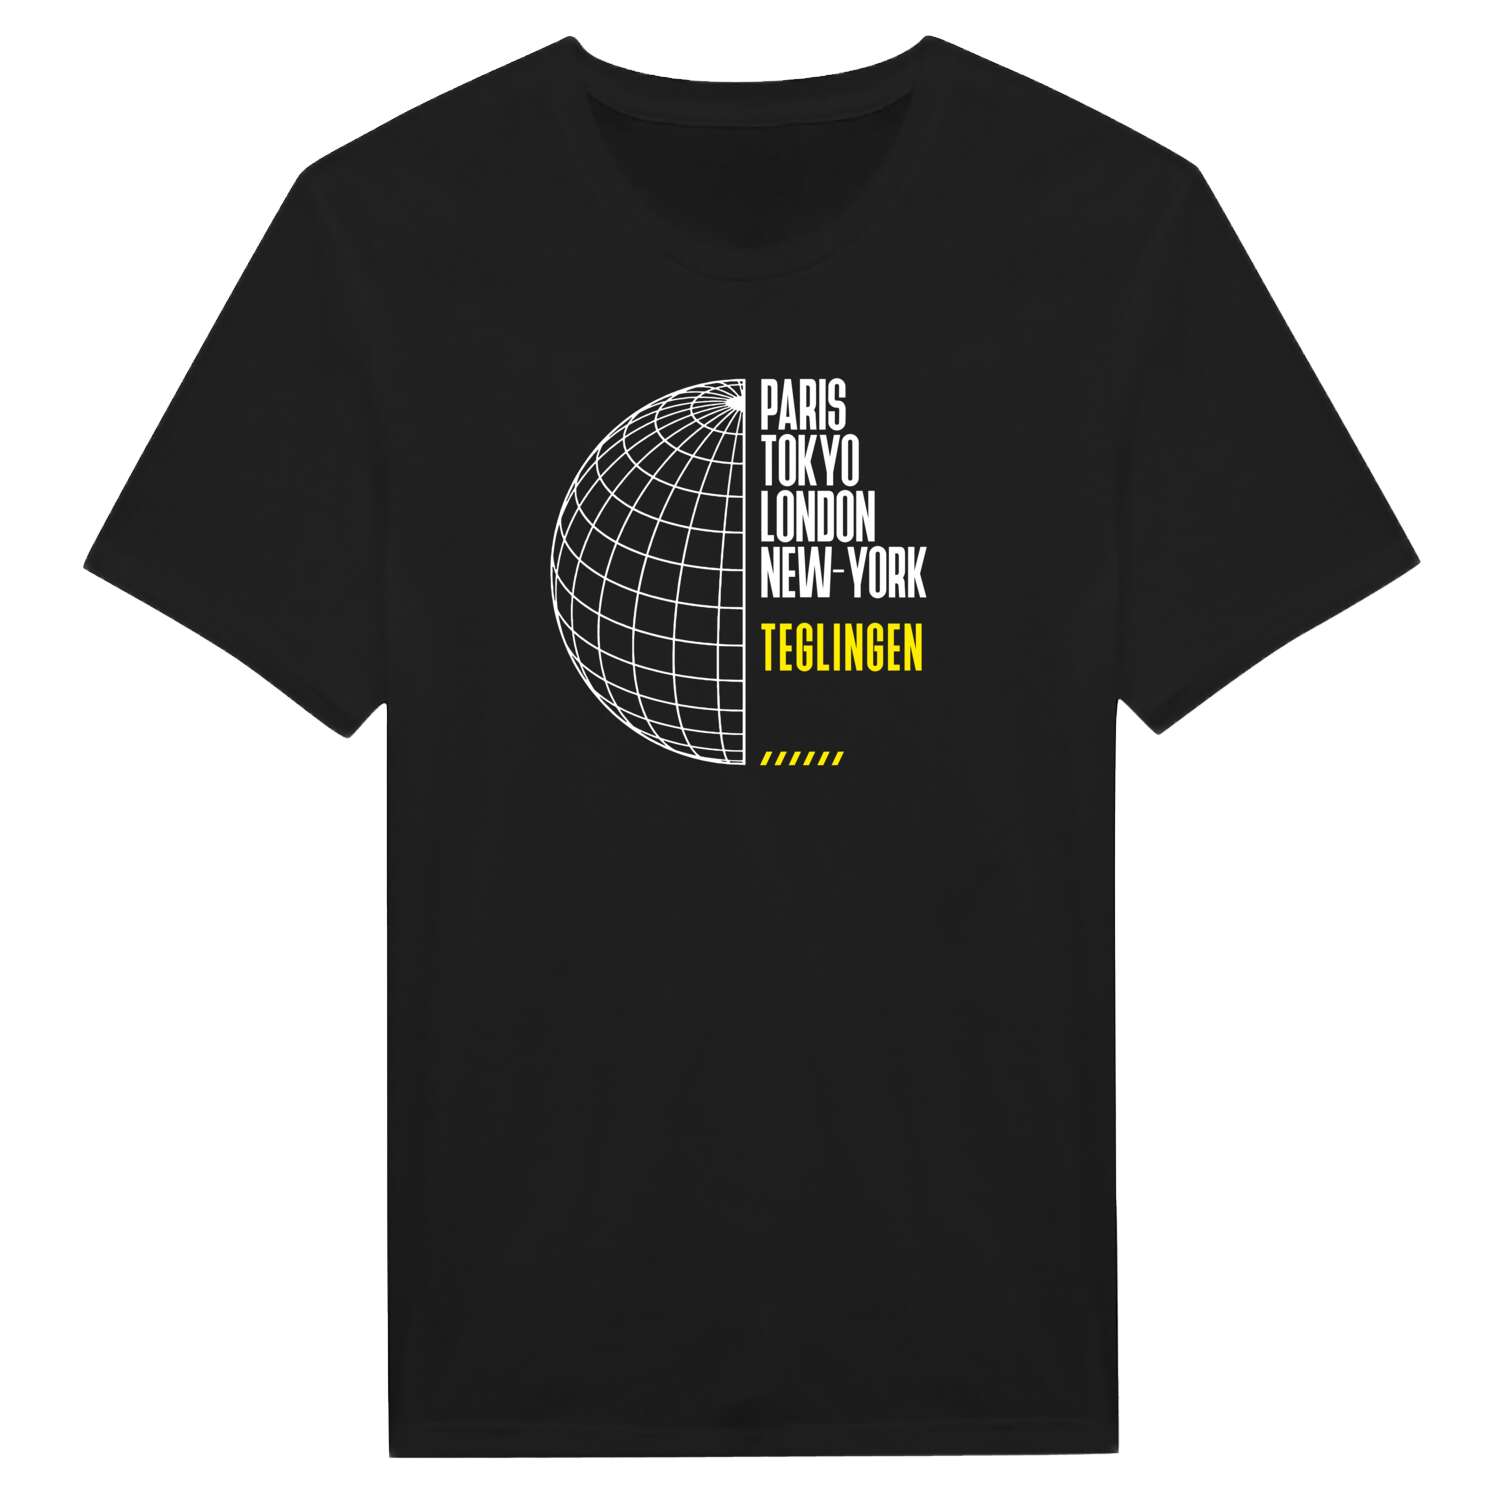 Teglingen T-Shirt »Paris Tokyo London«